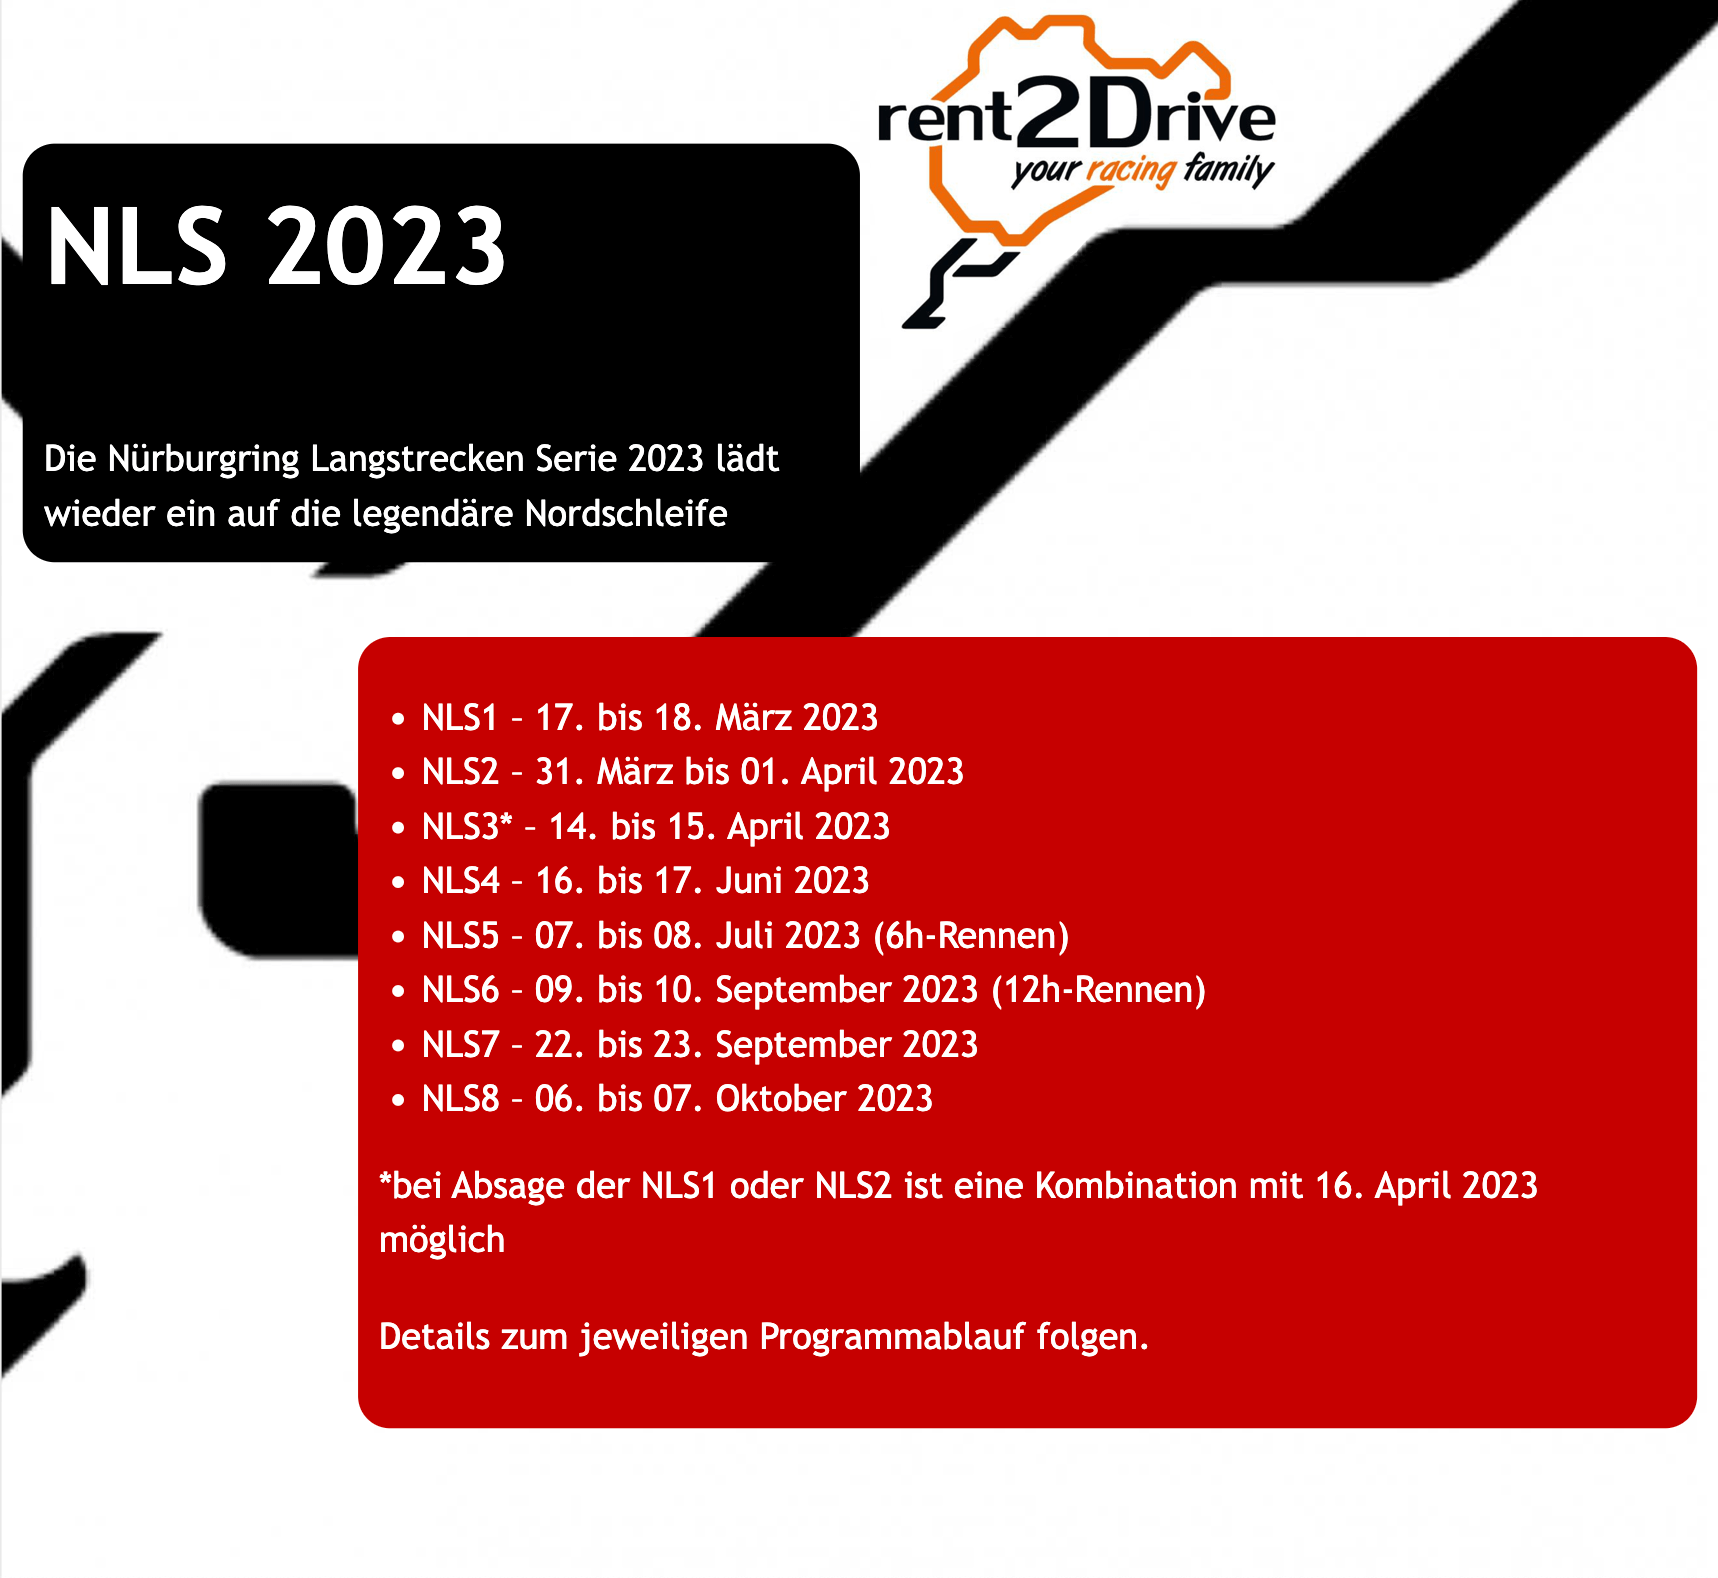 nls 2023